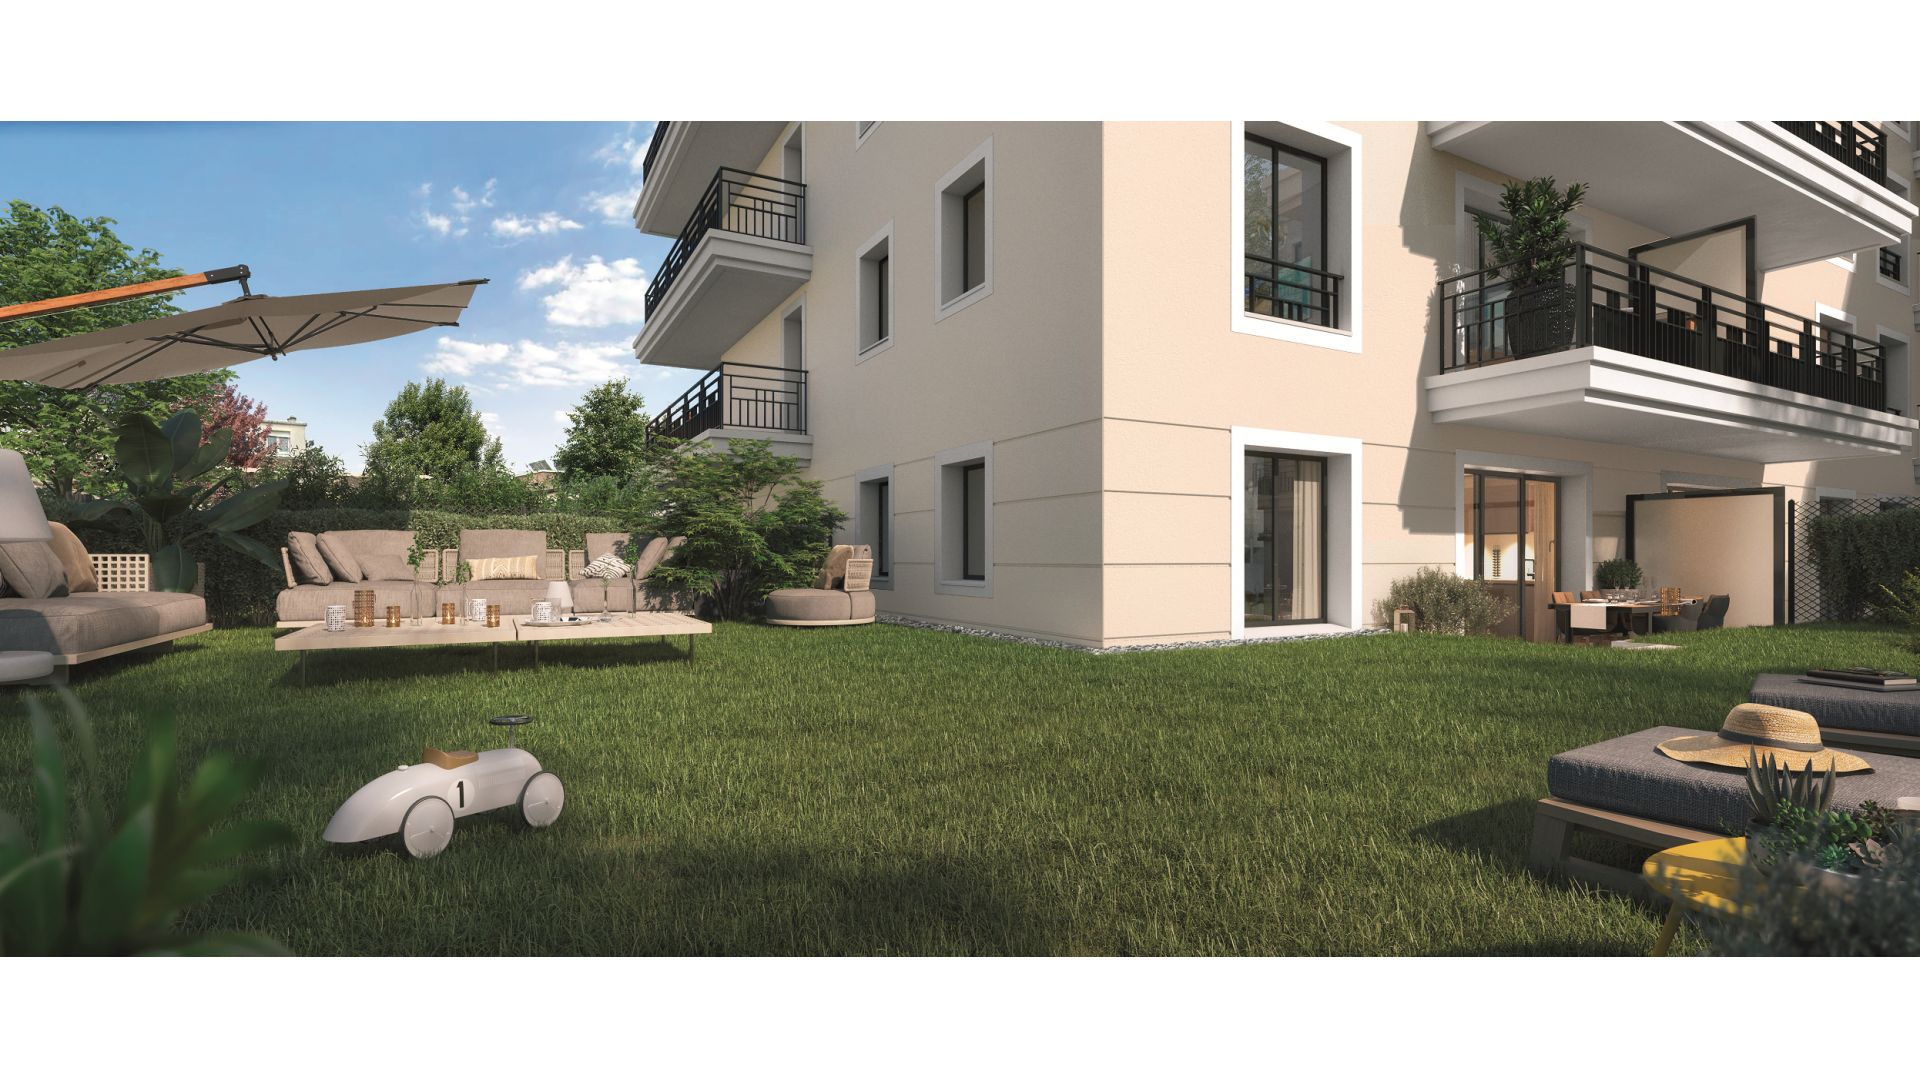 Greencity immobilier - achat appartements neufs du T1 au T5 - Résidence Les Jardins de l'Alma - 94100 Saint-Maur-des-Fossés - vue terrasse